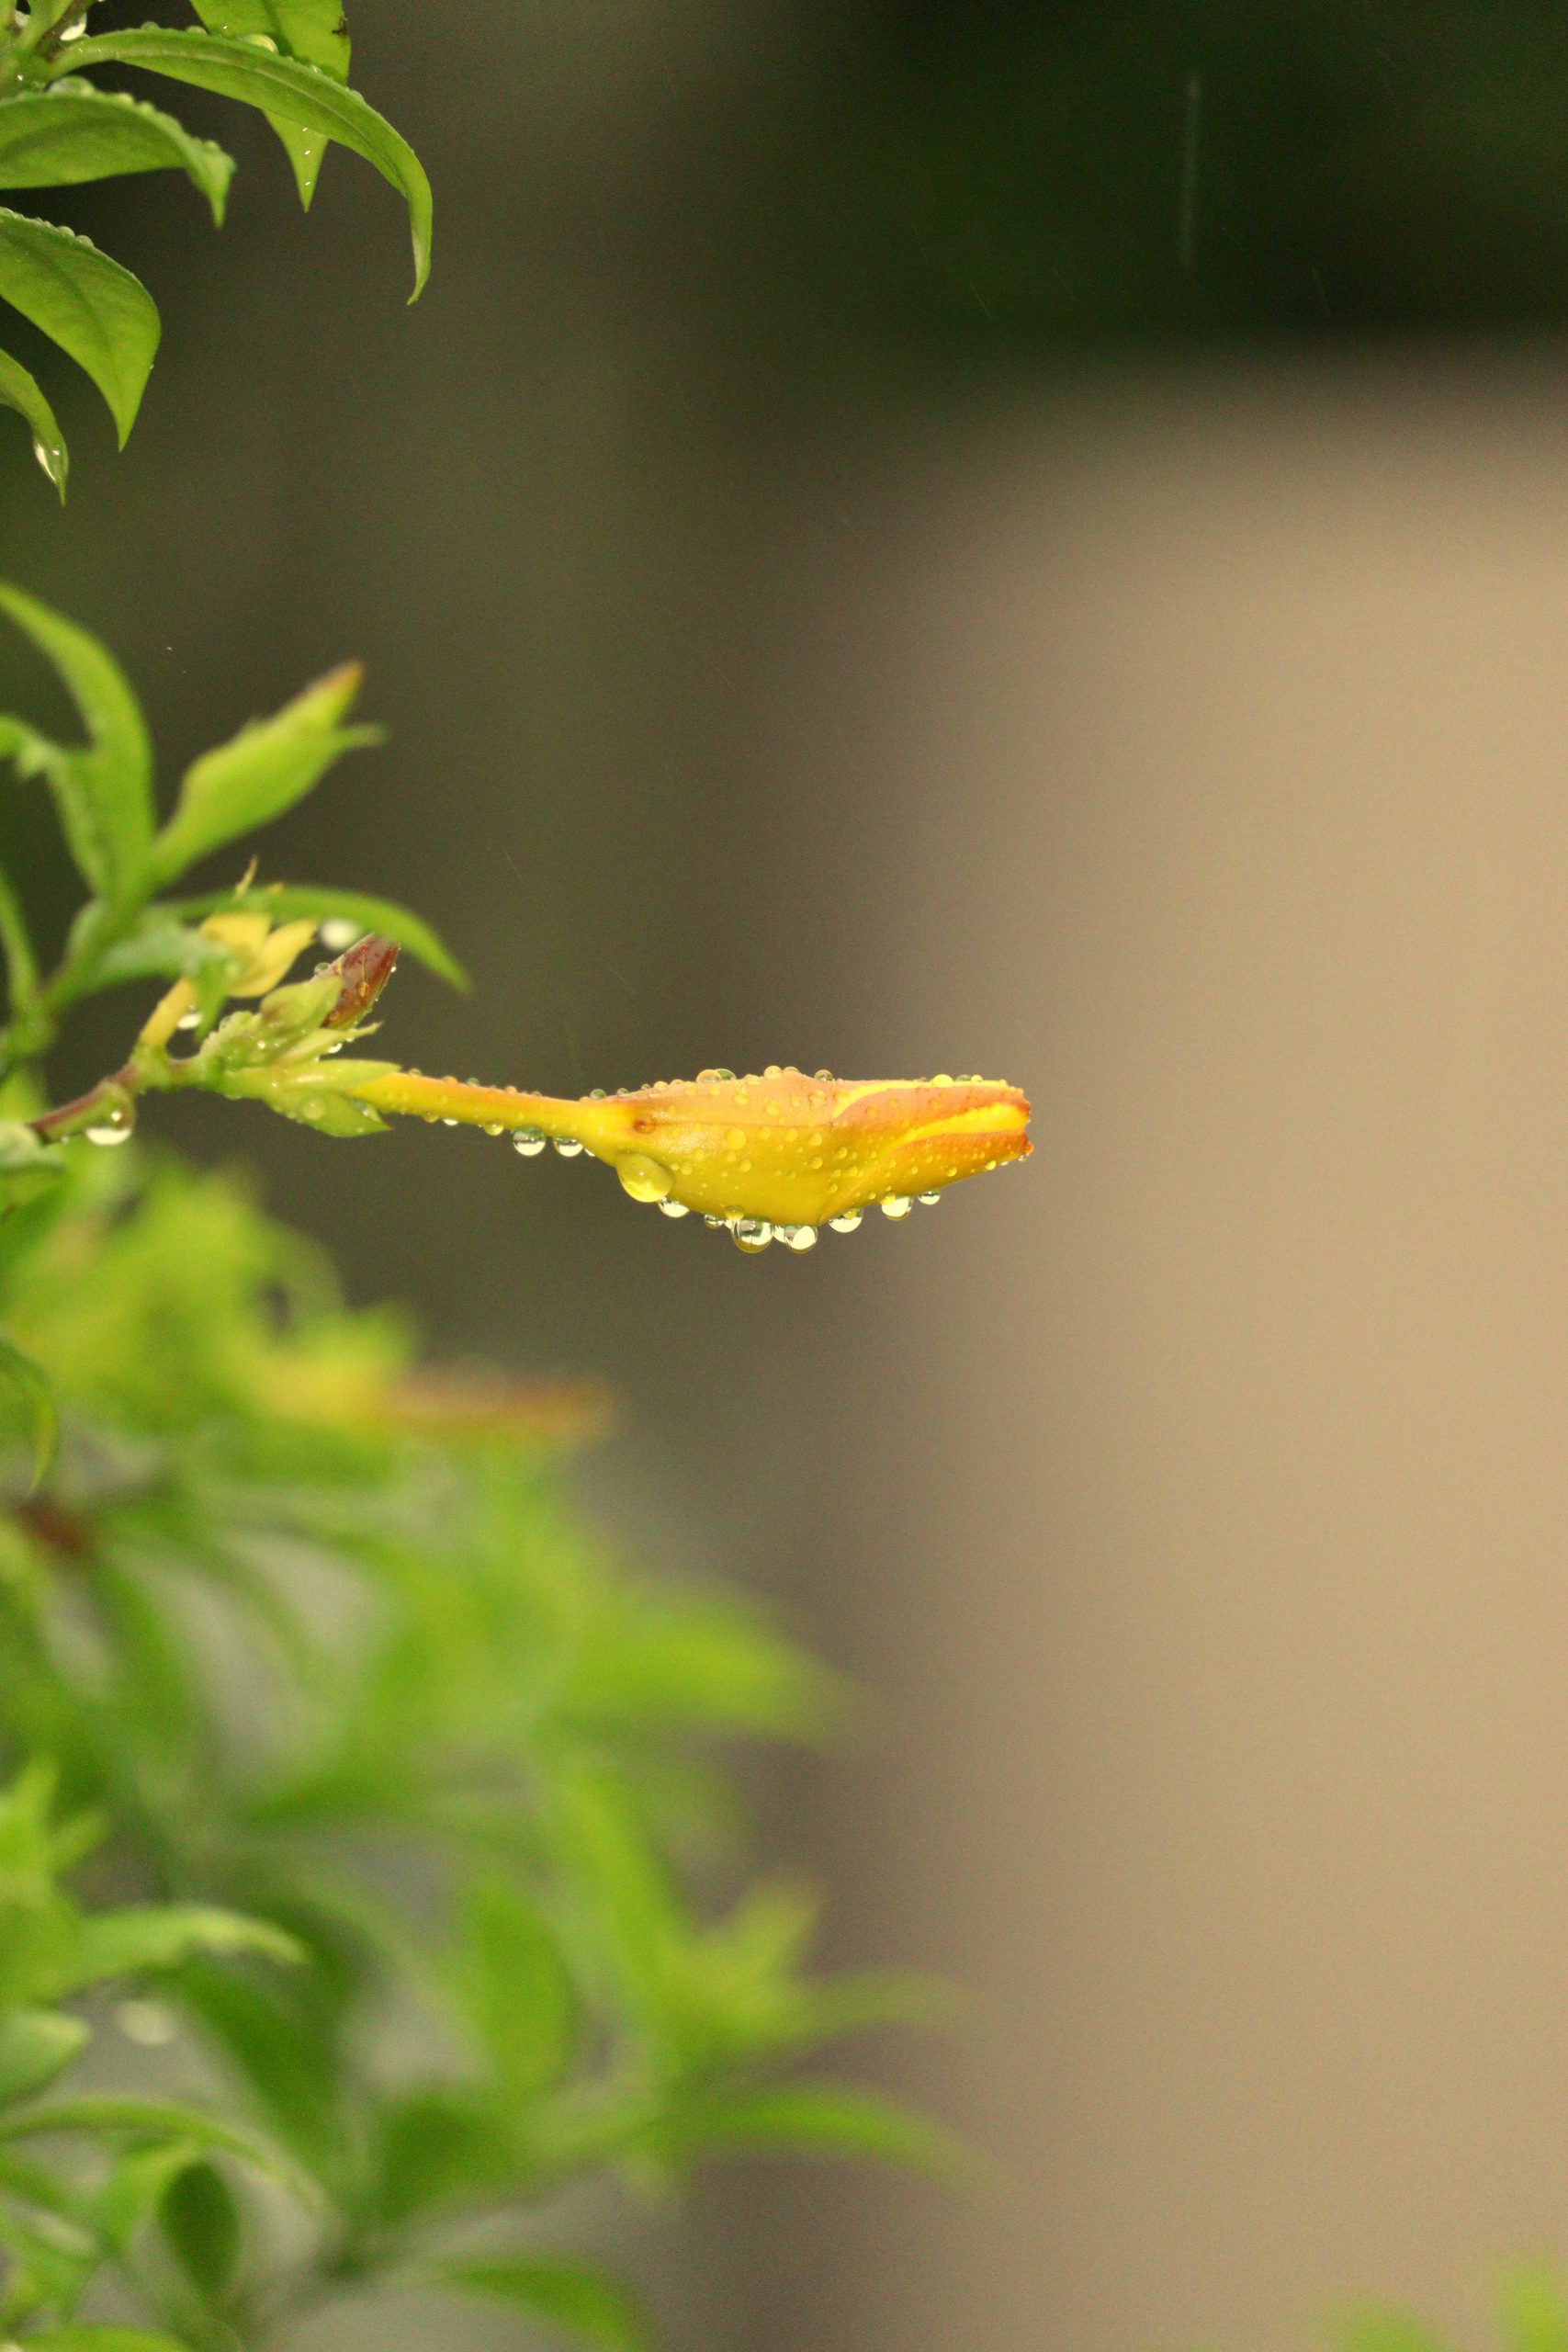 Dew on a flower bud